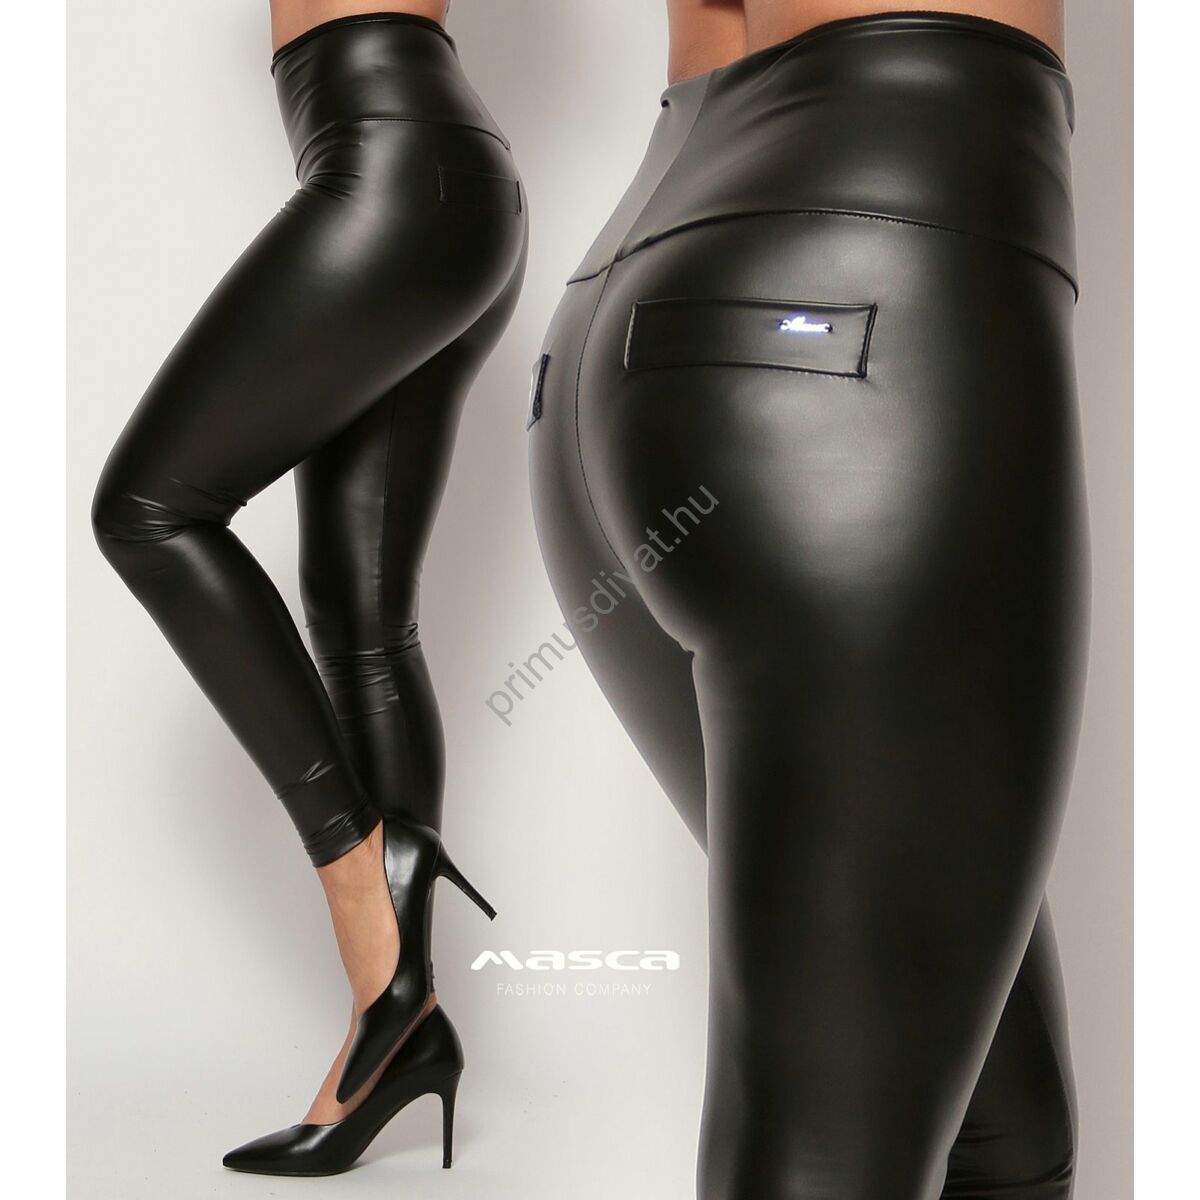 Masca Fashion magas derekú bőrhatású rugalmas fekete leggings, cicanadrág, hátán zsebfedőkkel